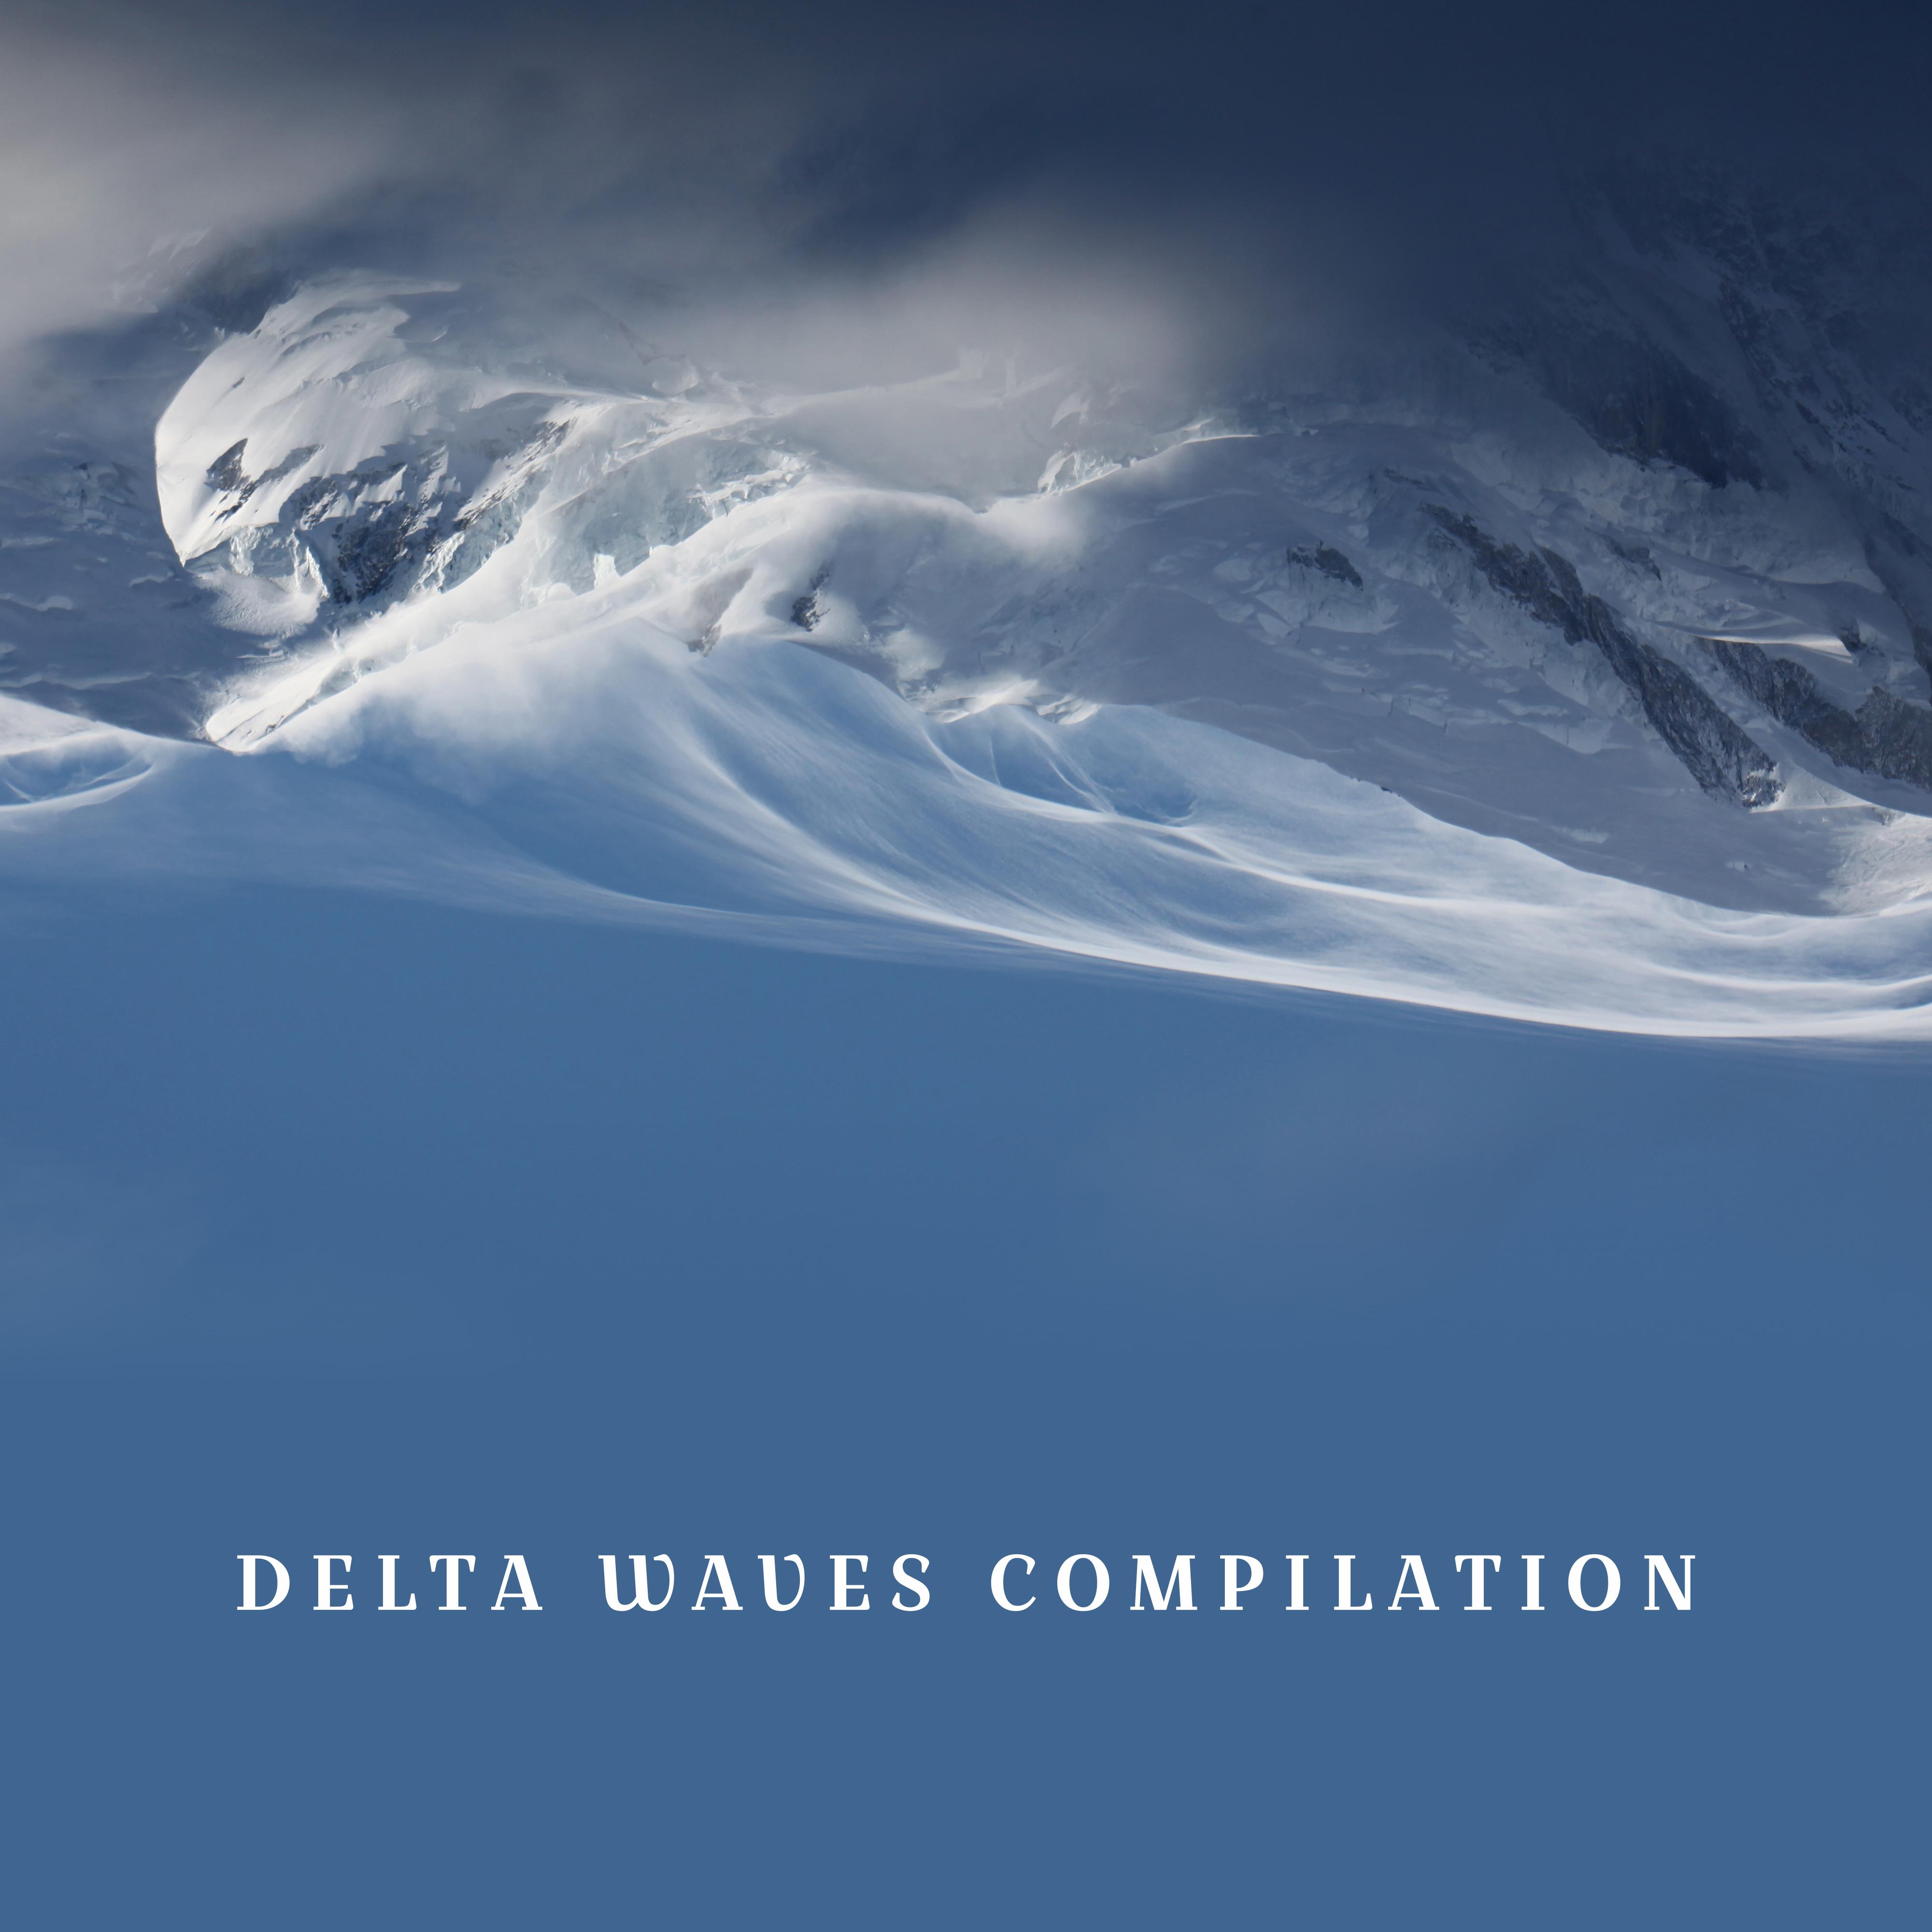 Delta Waves Compilation